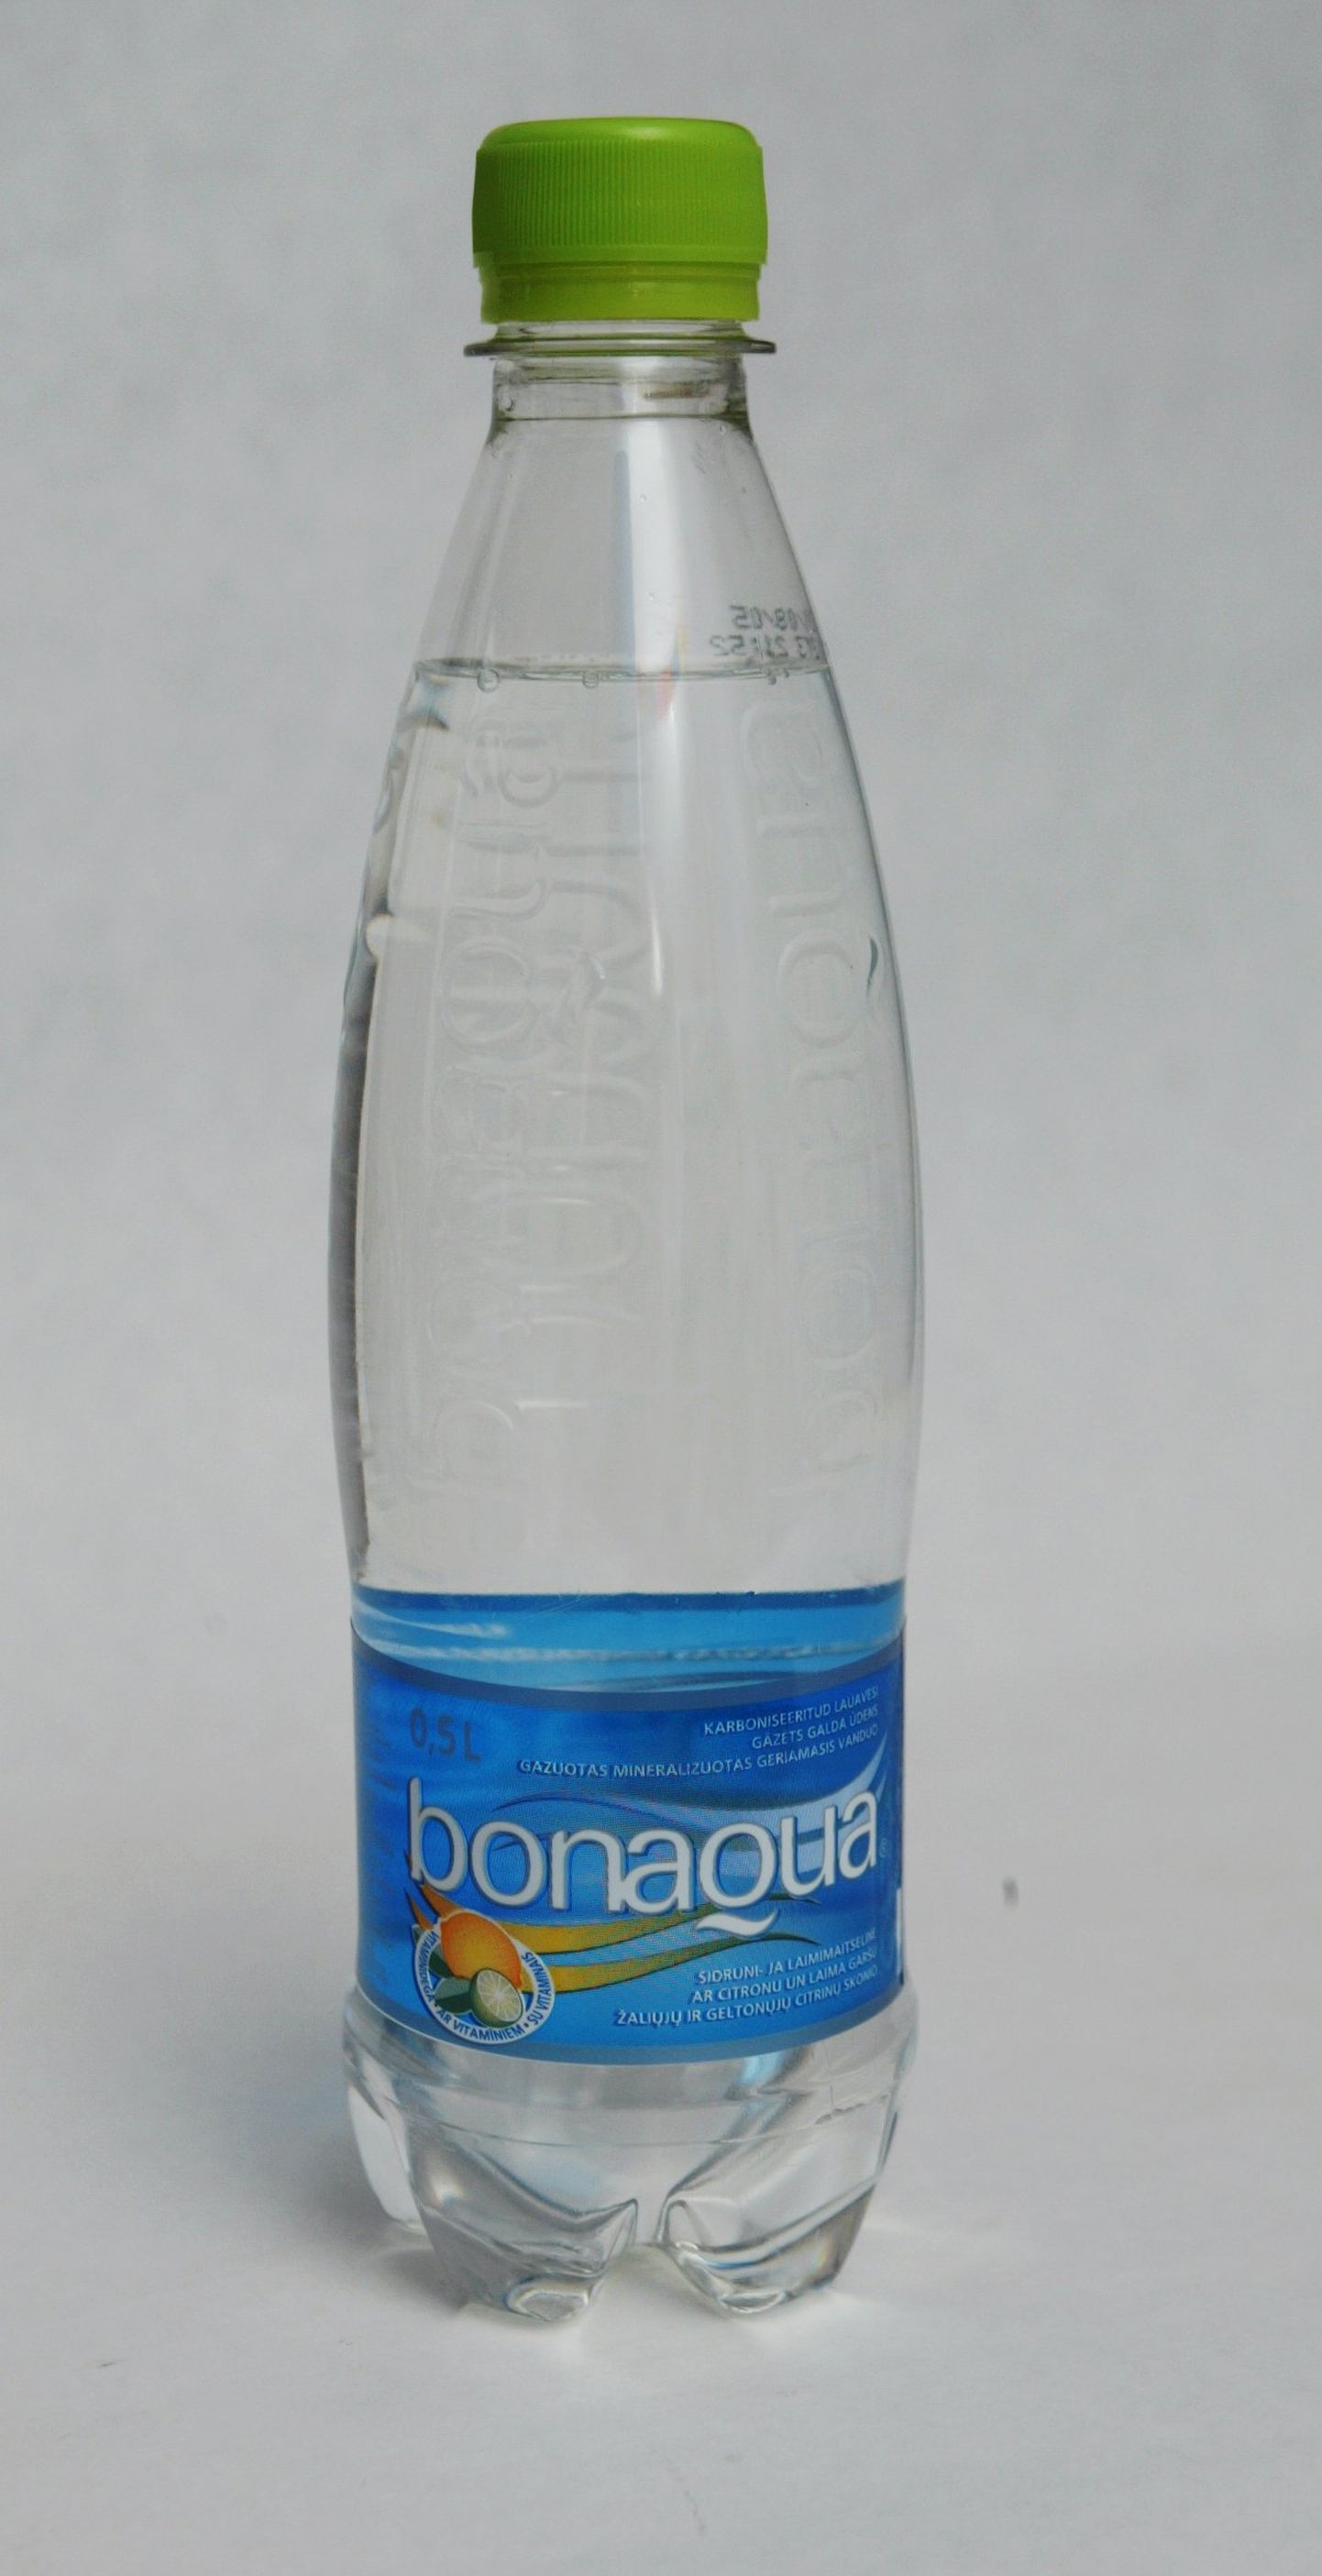 Bonaqua maitsevesi.